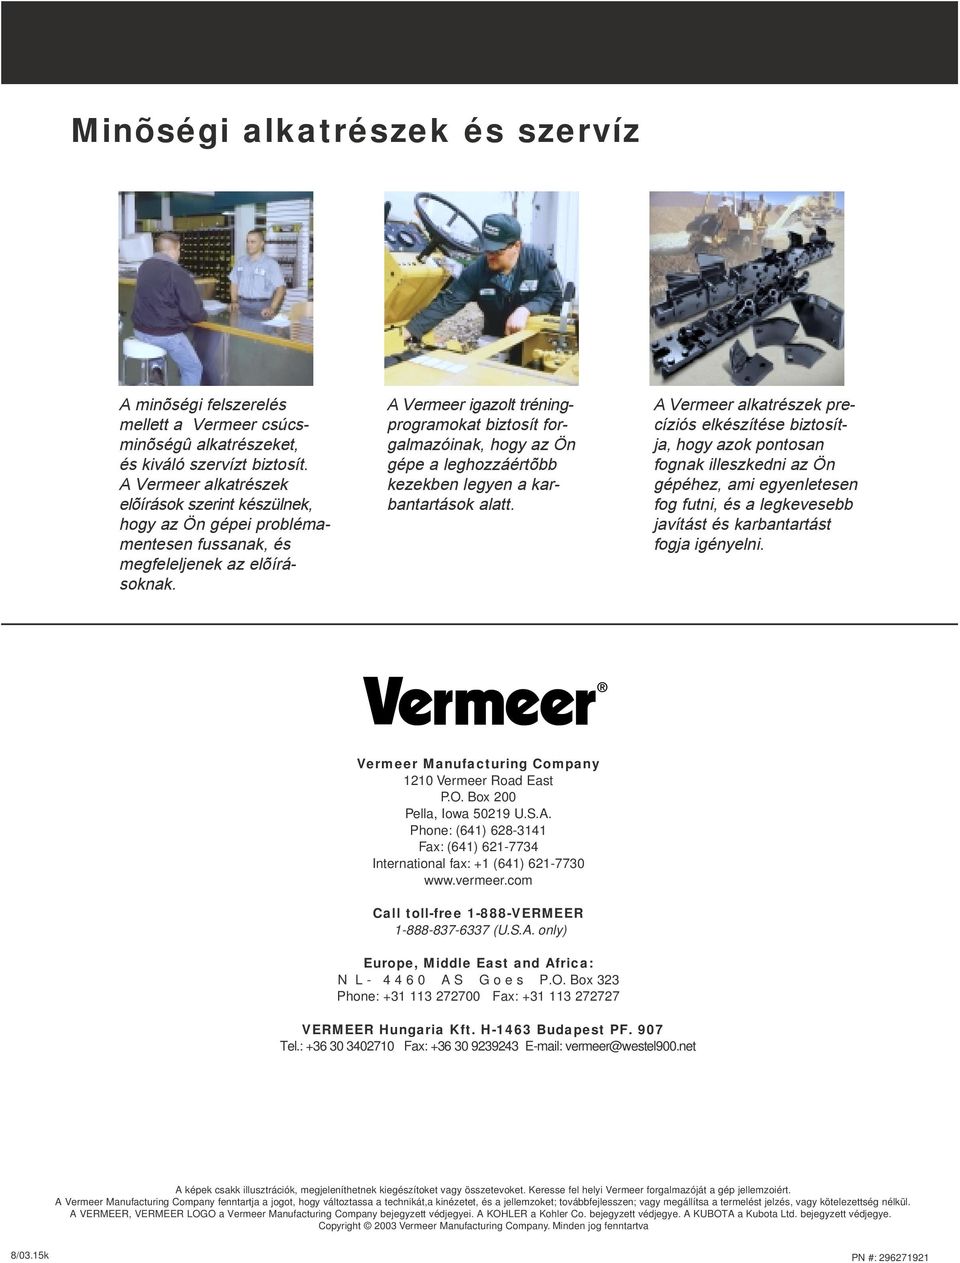 A Vermeer igazolt tréning- programokat biztosít for- galmazóinak, hogy az Ön gépe a leghozzáértõbb kezekben legyen a karbantartások alatt.